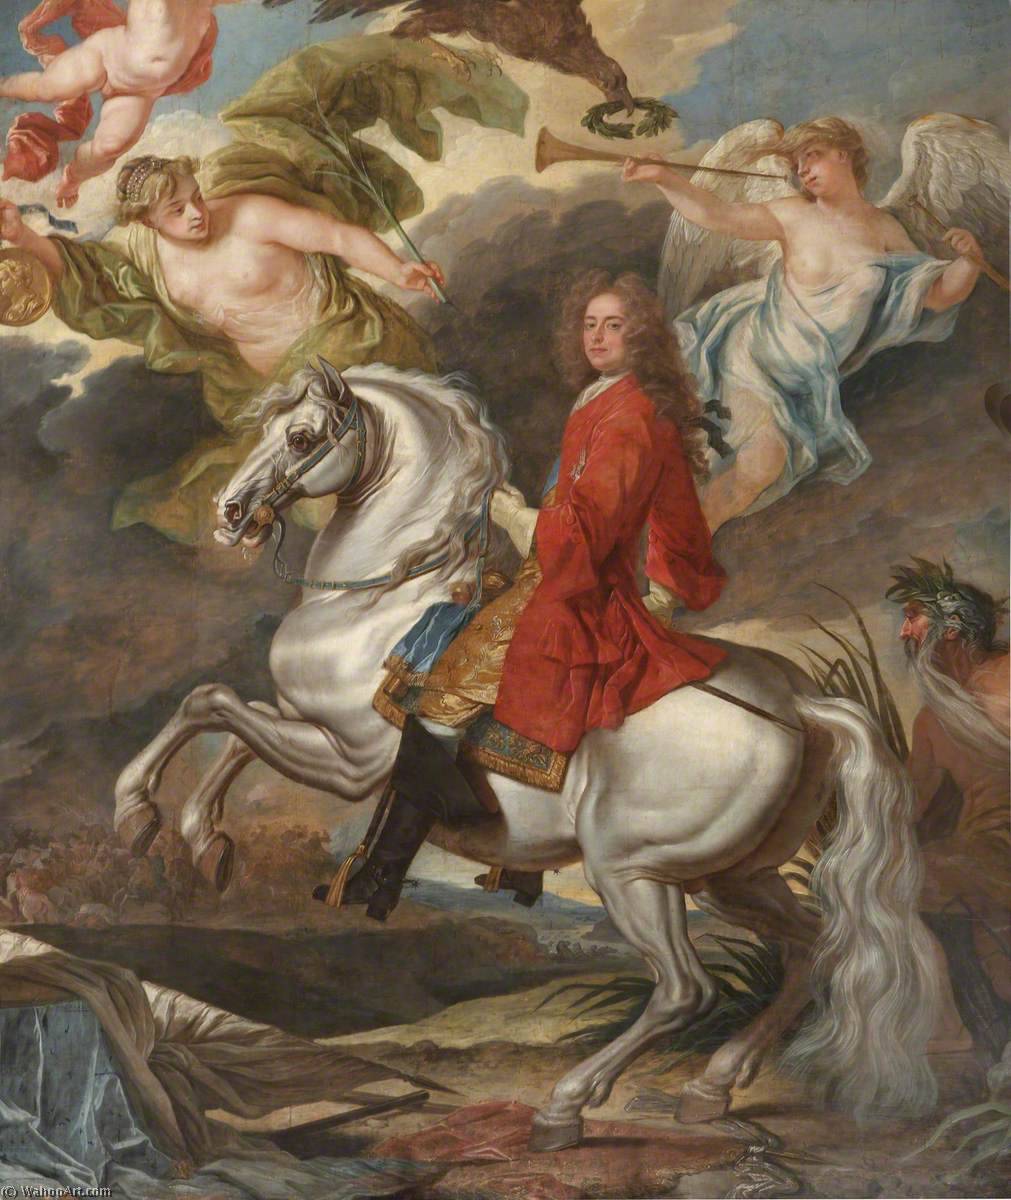 Compra Riproduzioni D'arte Del Museo Il Trionfo di Giovanni, I duca di Marlborough di John Closterman | ArtsDot.com